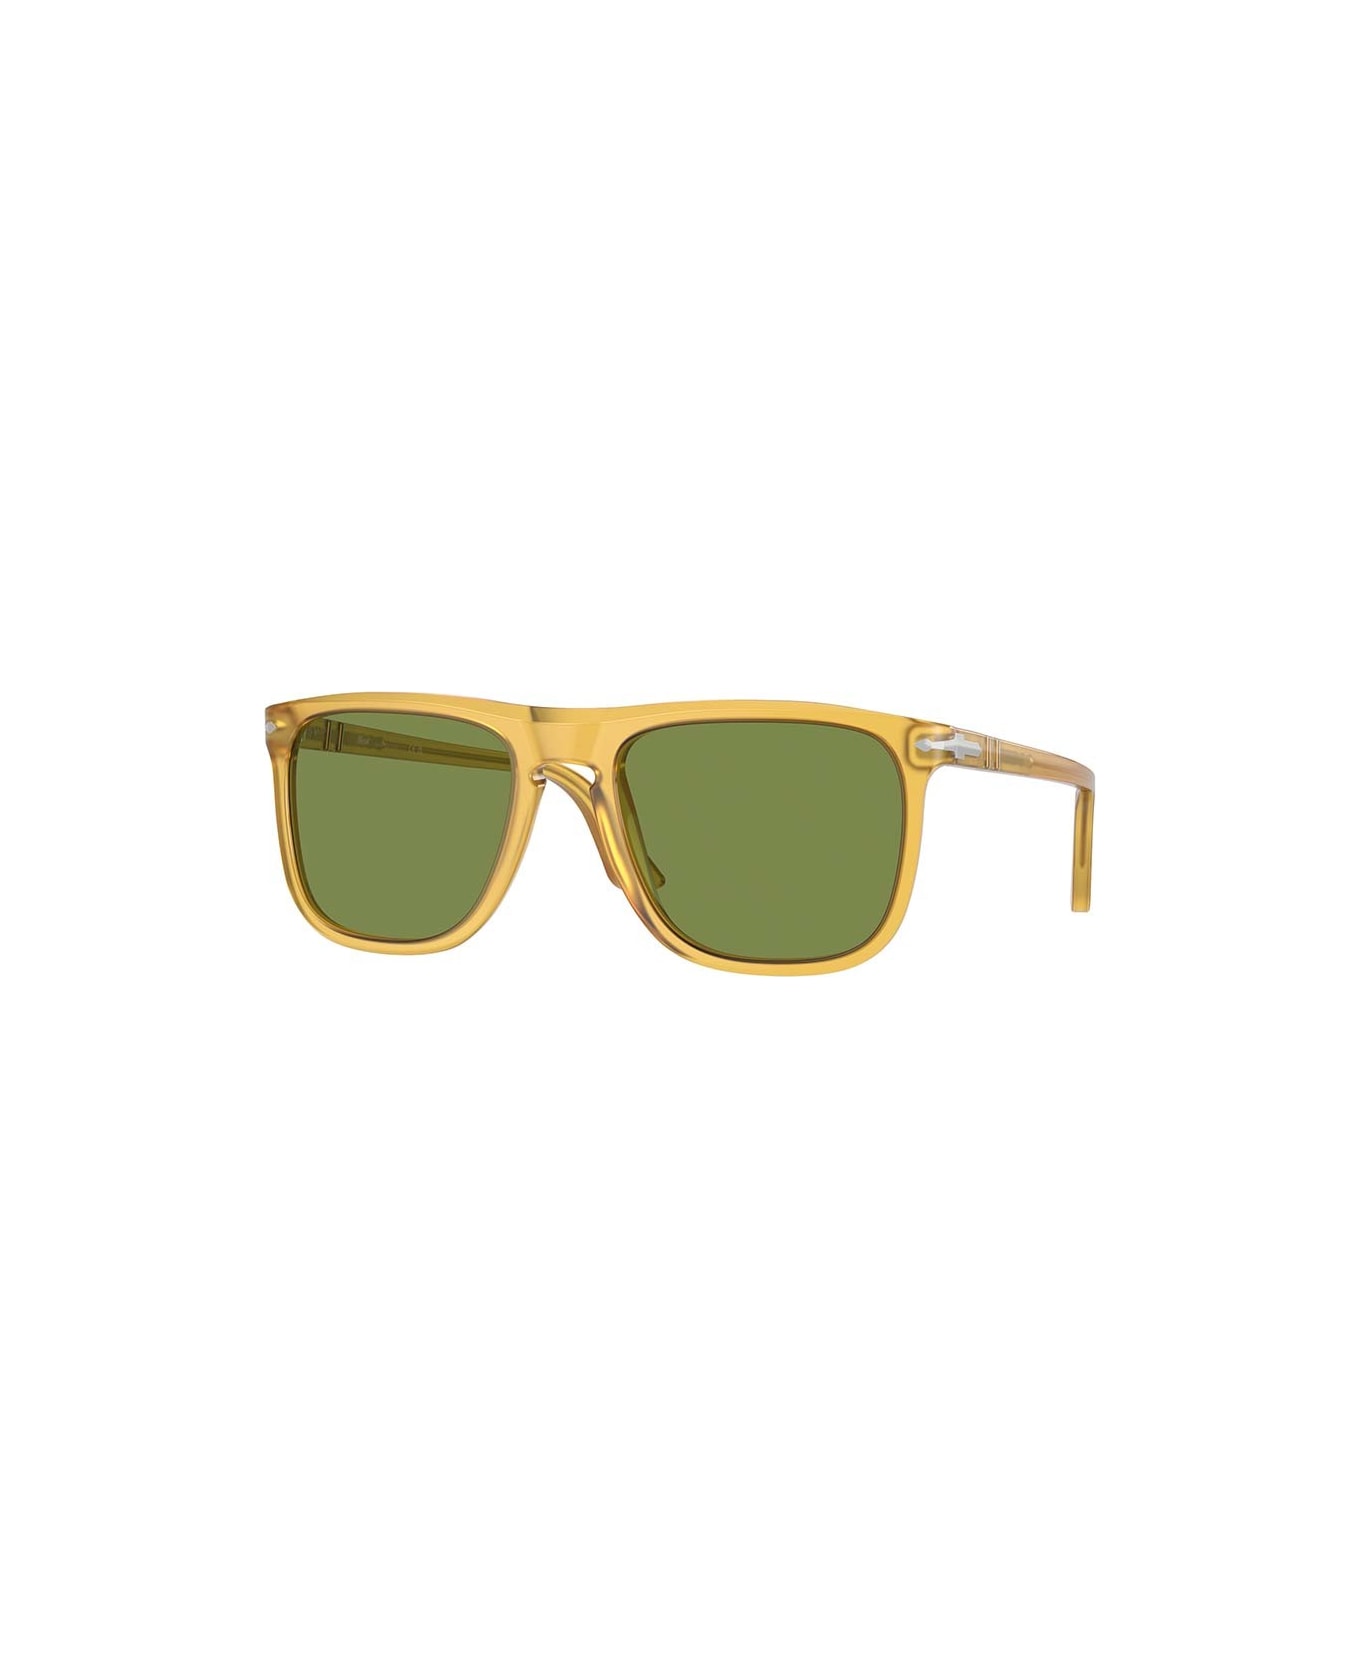 Persol Eyewear - Miele/Verde